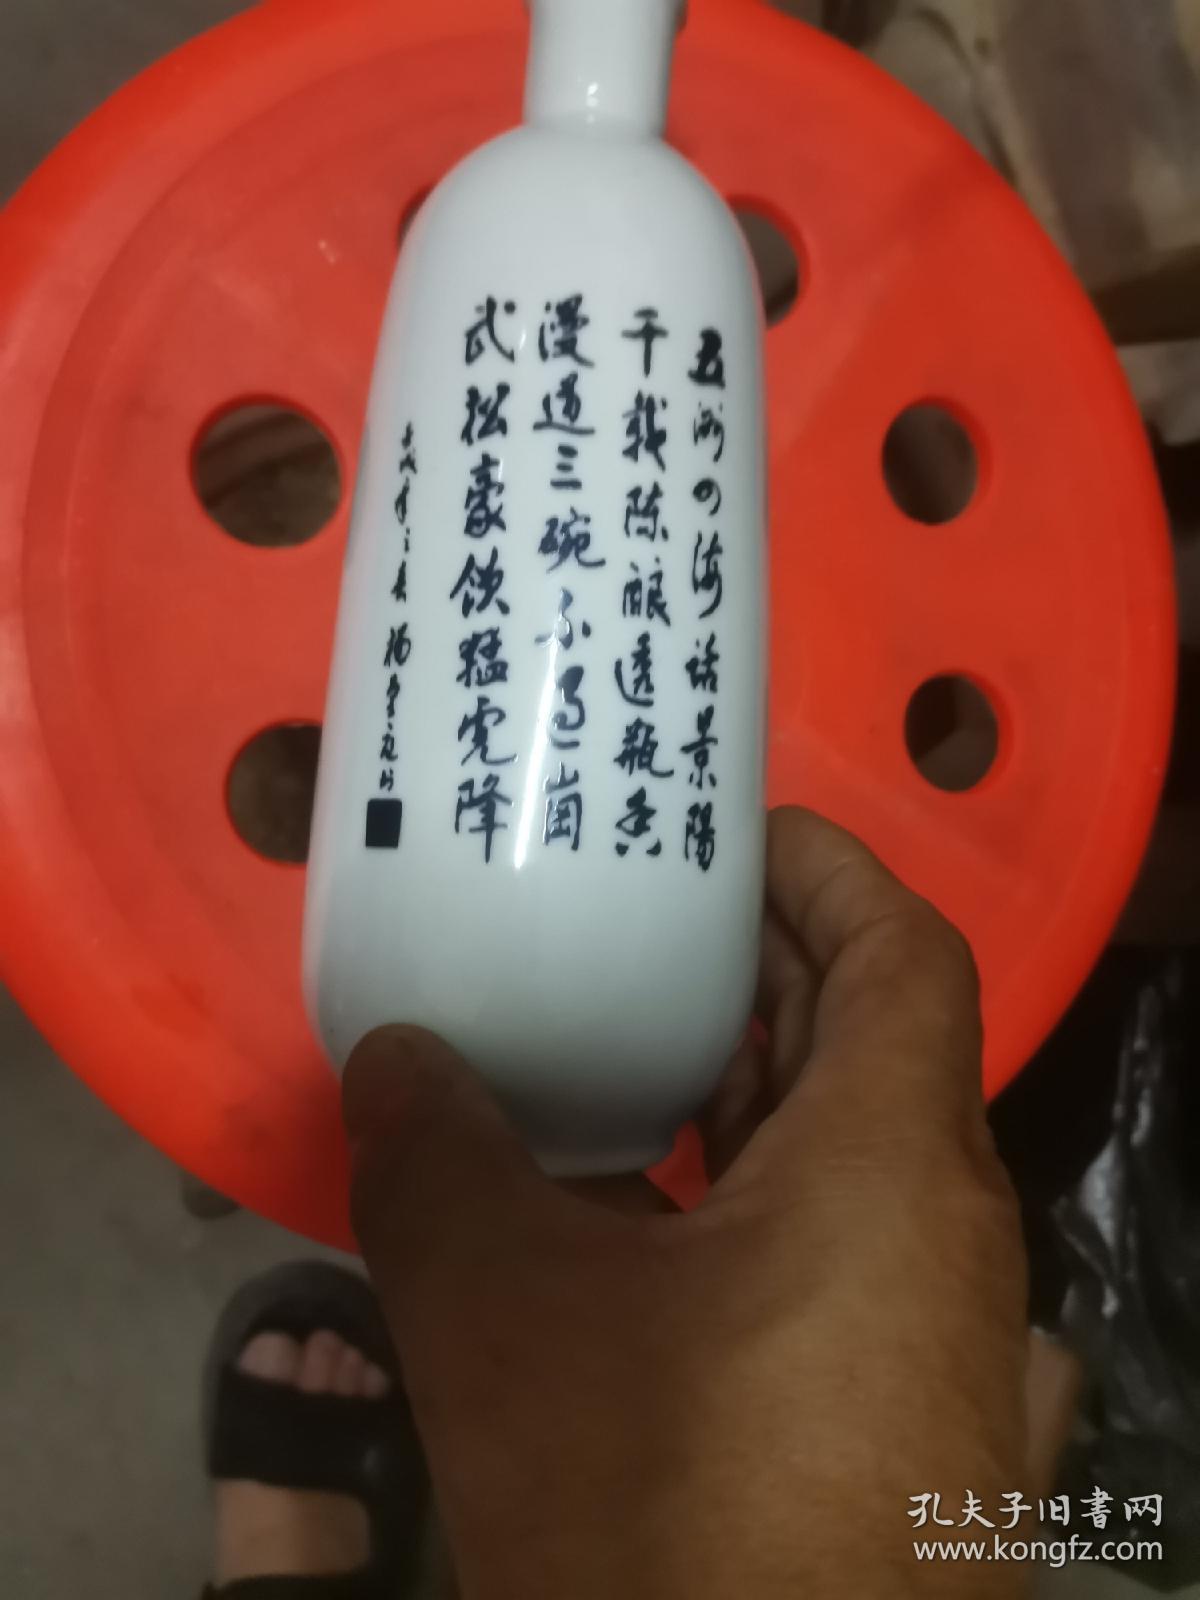 九十年代景阳冈陈酿青花武松打虎图酒瓶，一斤装空酒瓶。